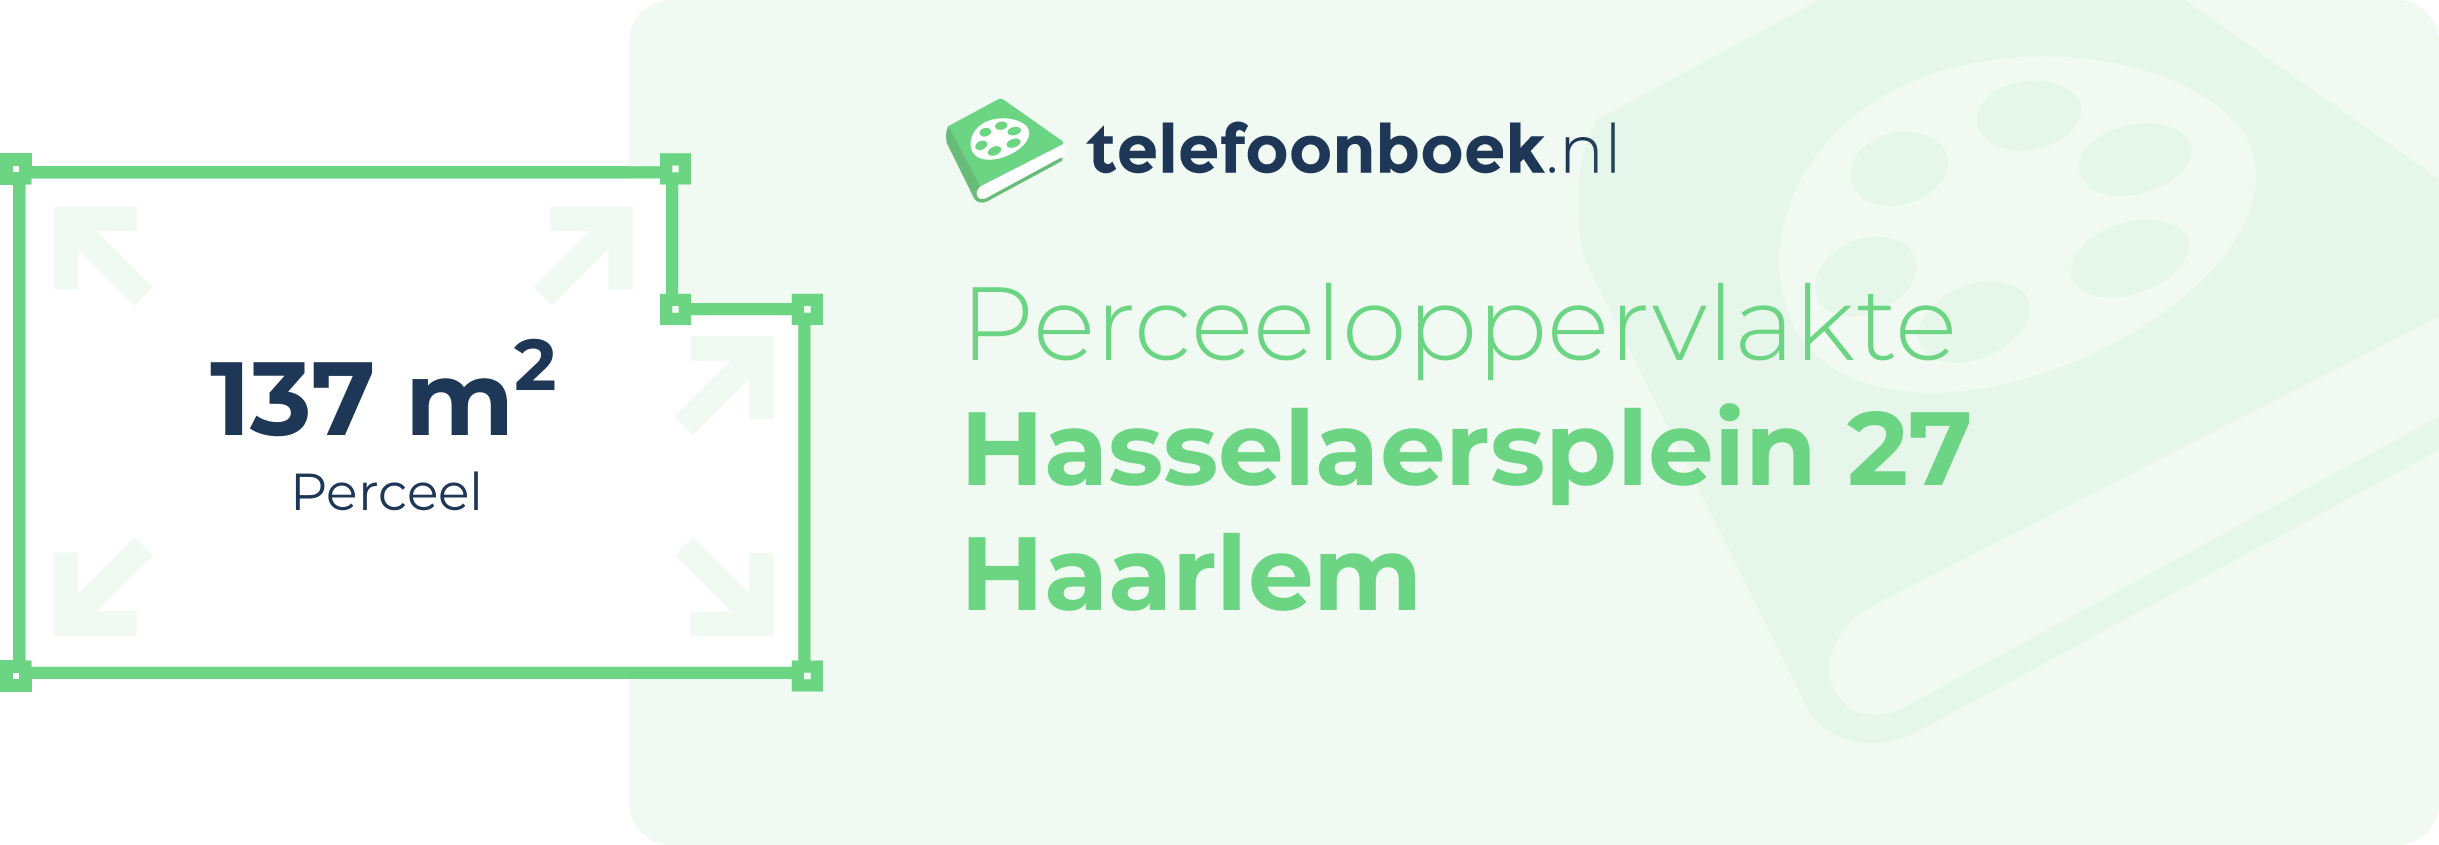 Perceeloppervlakte Hasselaersplein 27 Haarlem